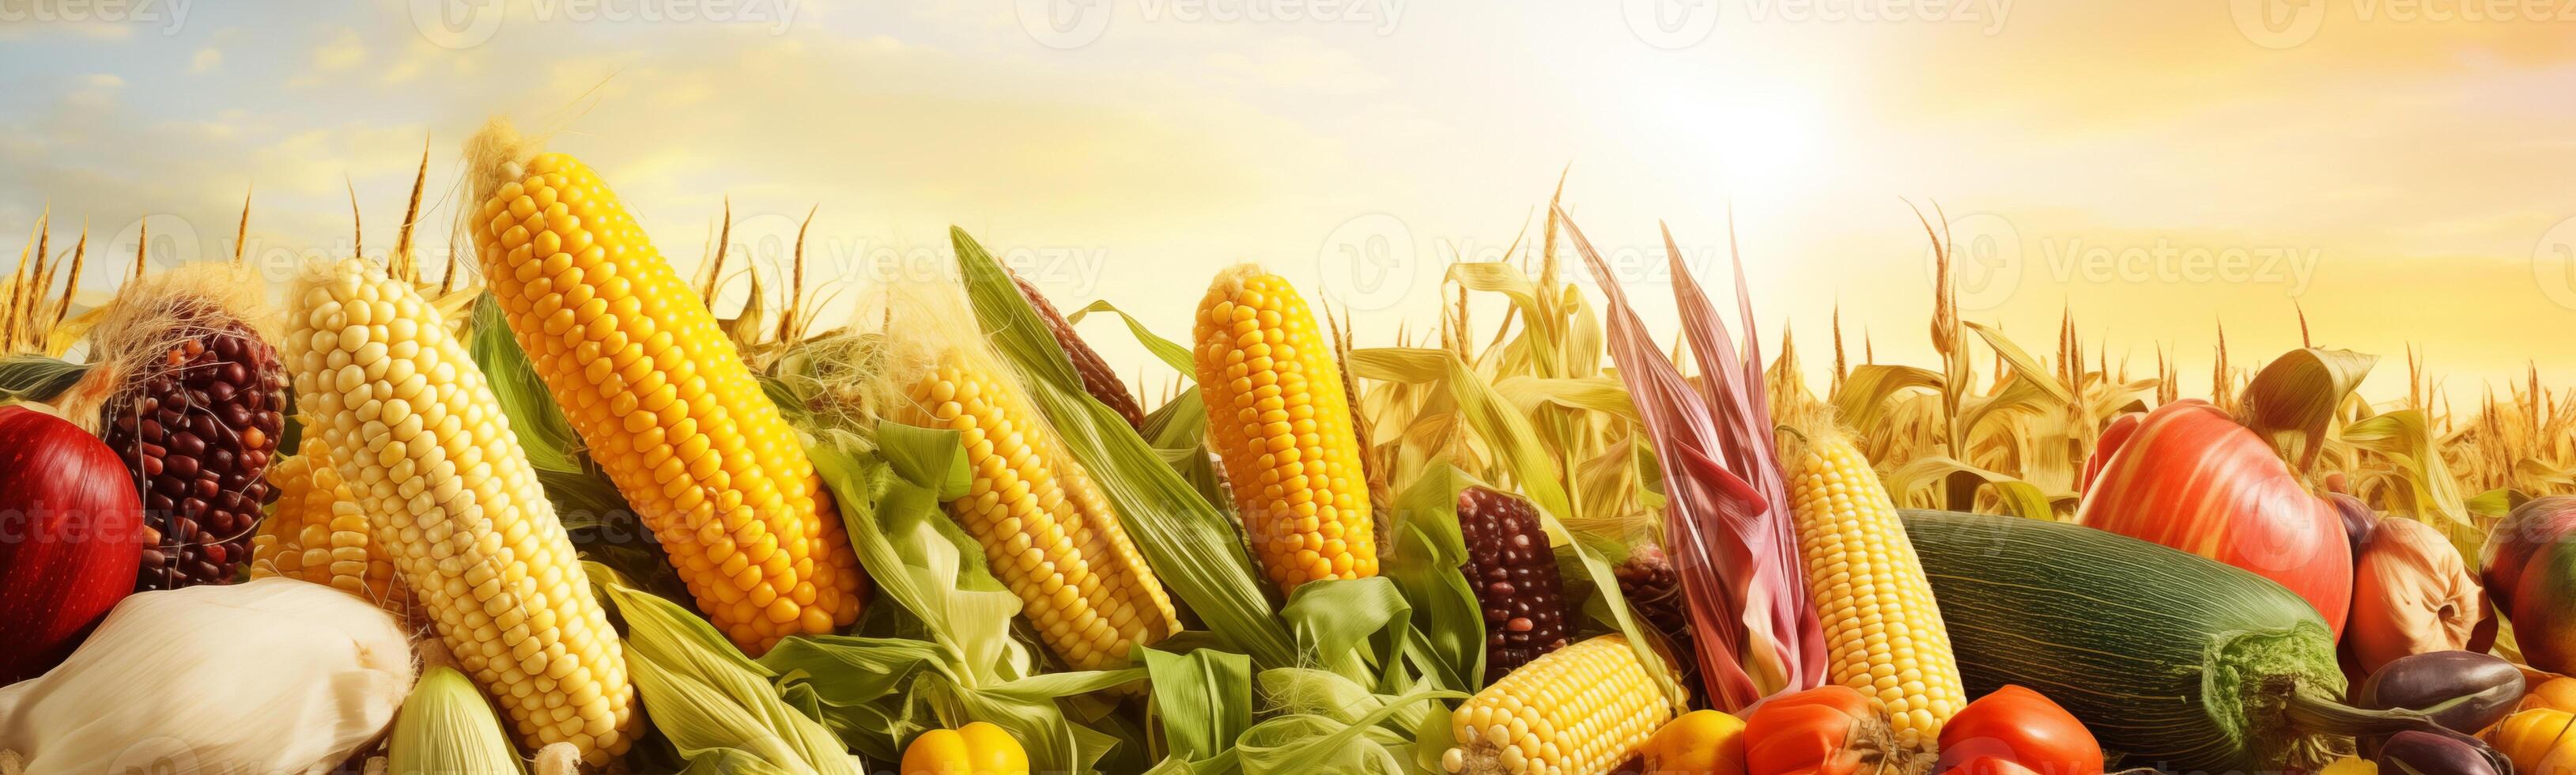 bannière capturer un assortiment de Frais des légumes dans une vibrant ferme champ photo